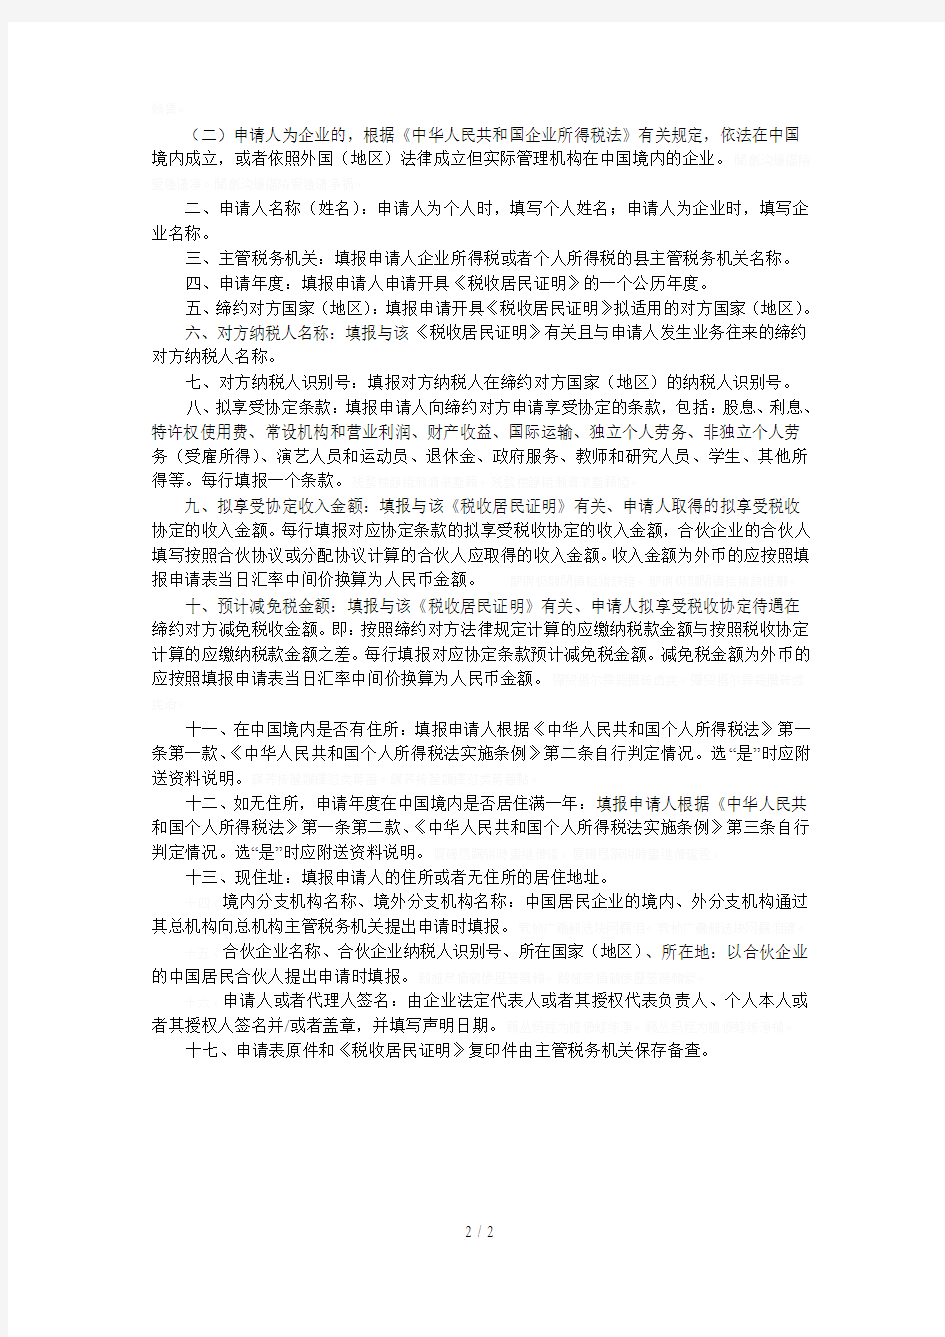 《中国税收居民身份证明》申请表